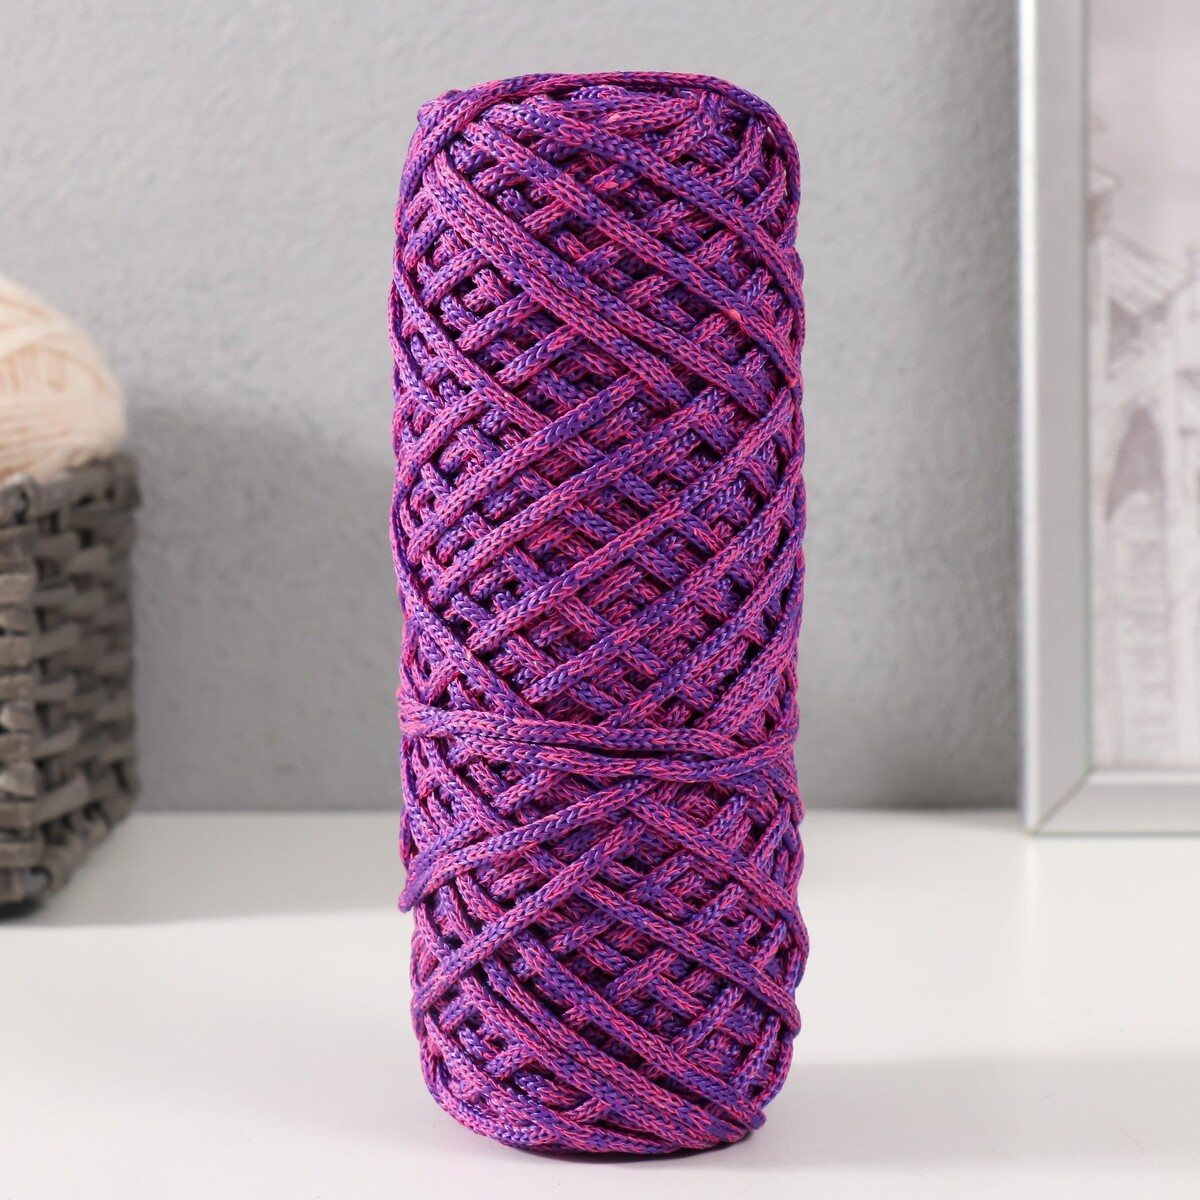 Шнур для вязания 35% хлопок,65% полипропилен 3 мм 85м/160±10 гр (фуксия/фиолетовый) No brand